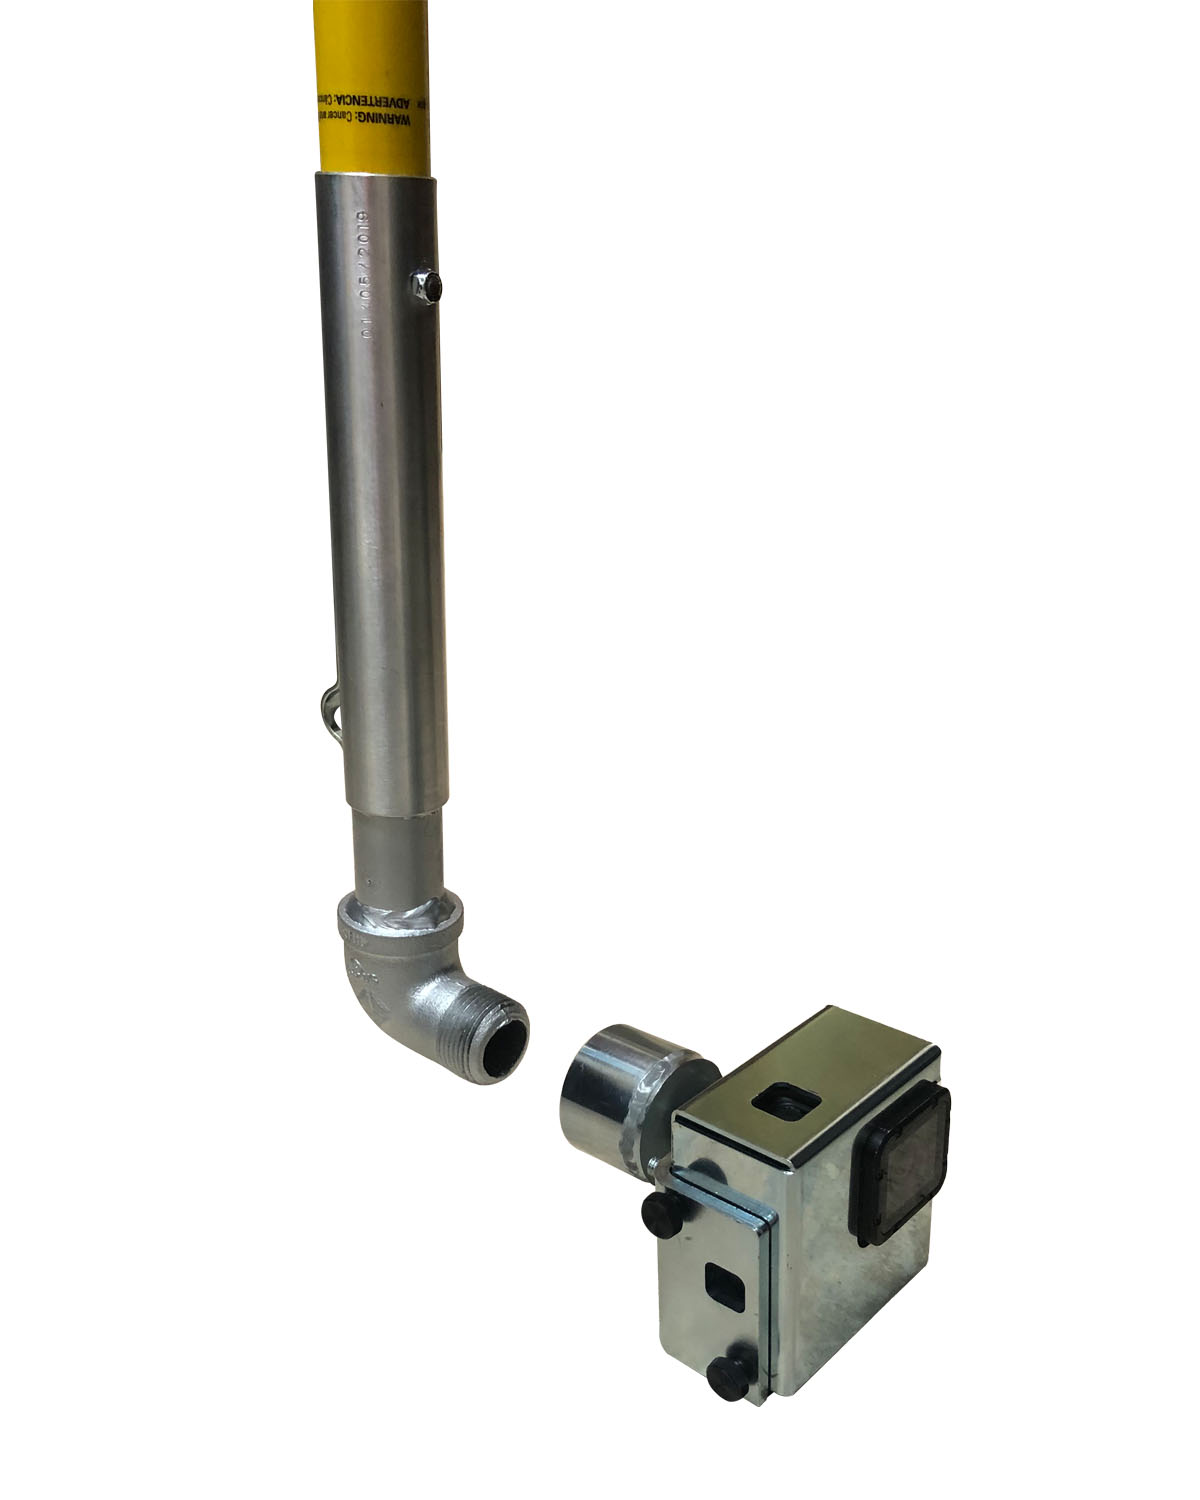 Sewer Camera Fiberglass Pole Adapter